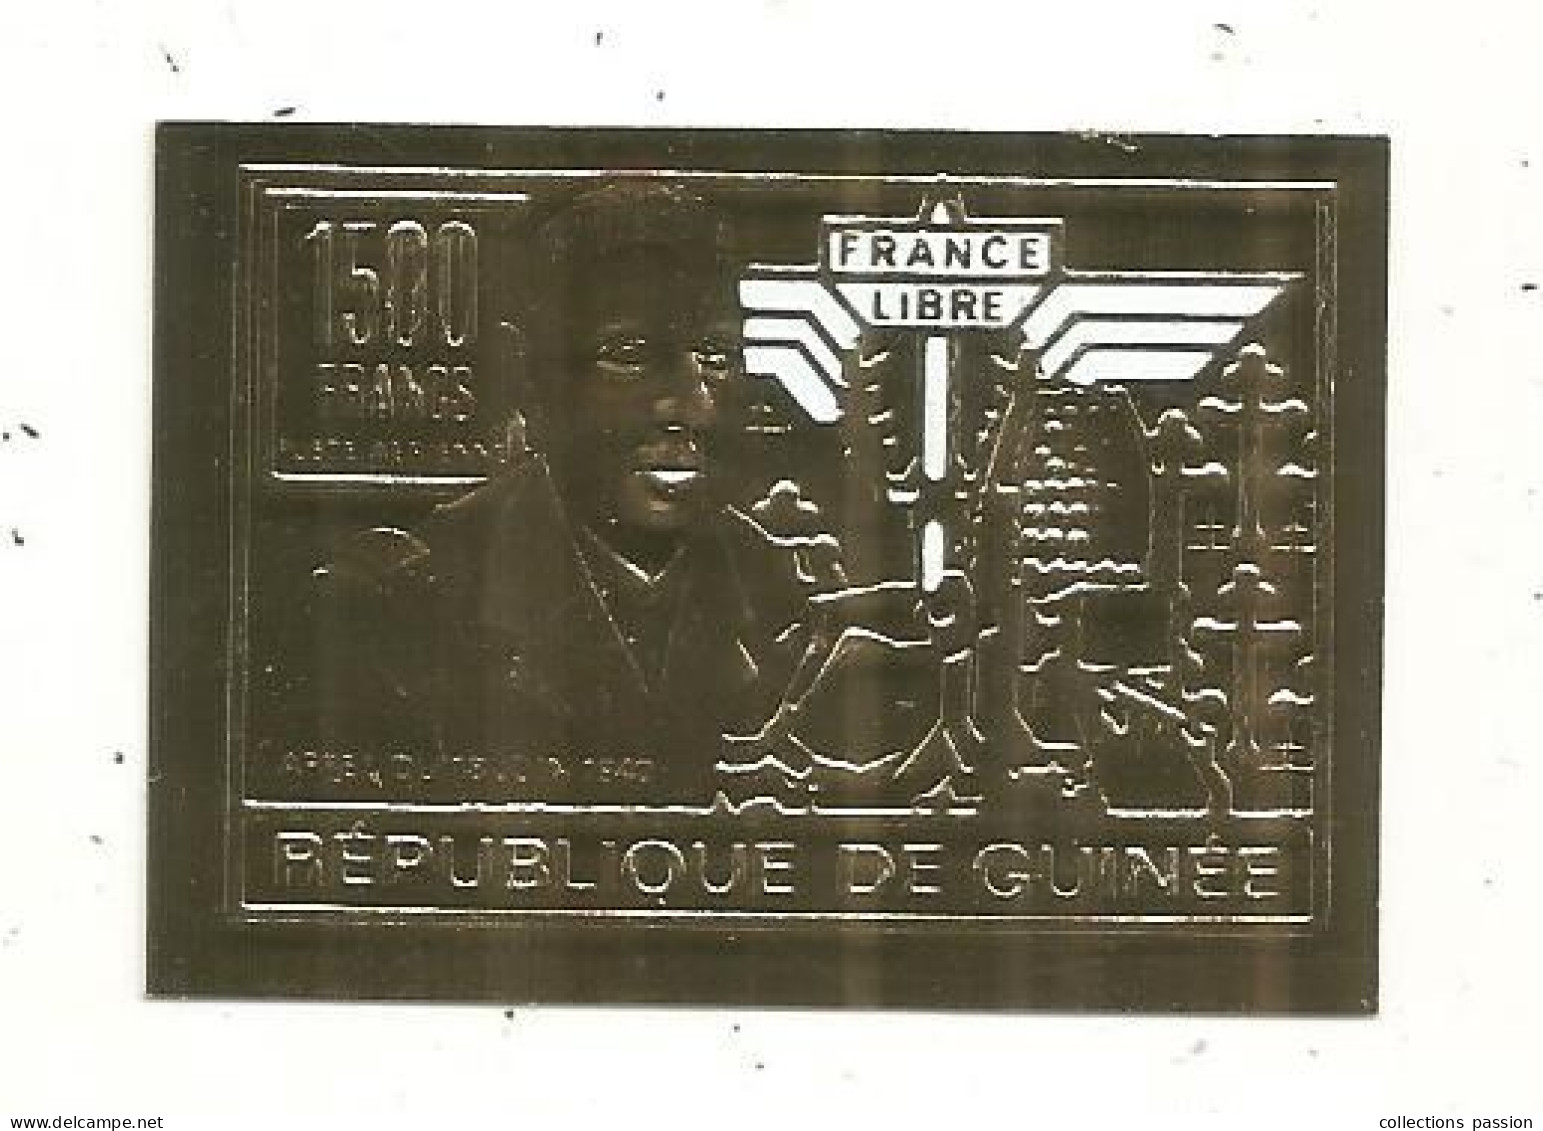 Timbre , GUINEE,1500 Francs , FRANCE LIBRE , Appel Du 18 Juin 1940, Général DE GAULLE - República De Guinea (1958-...)